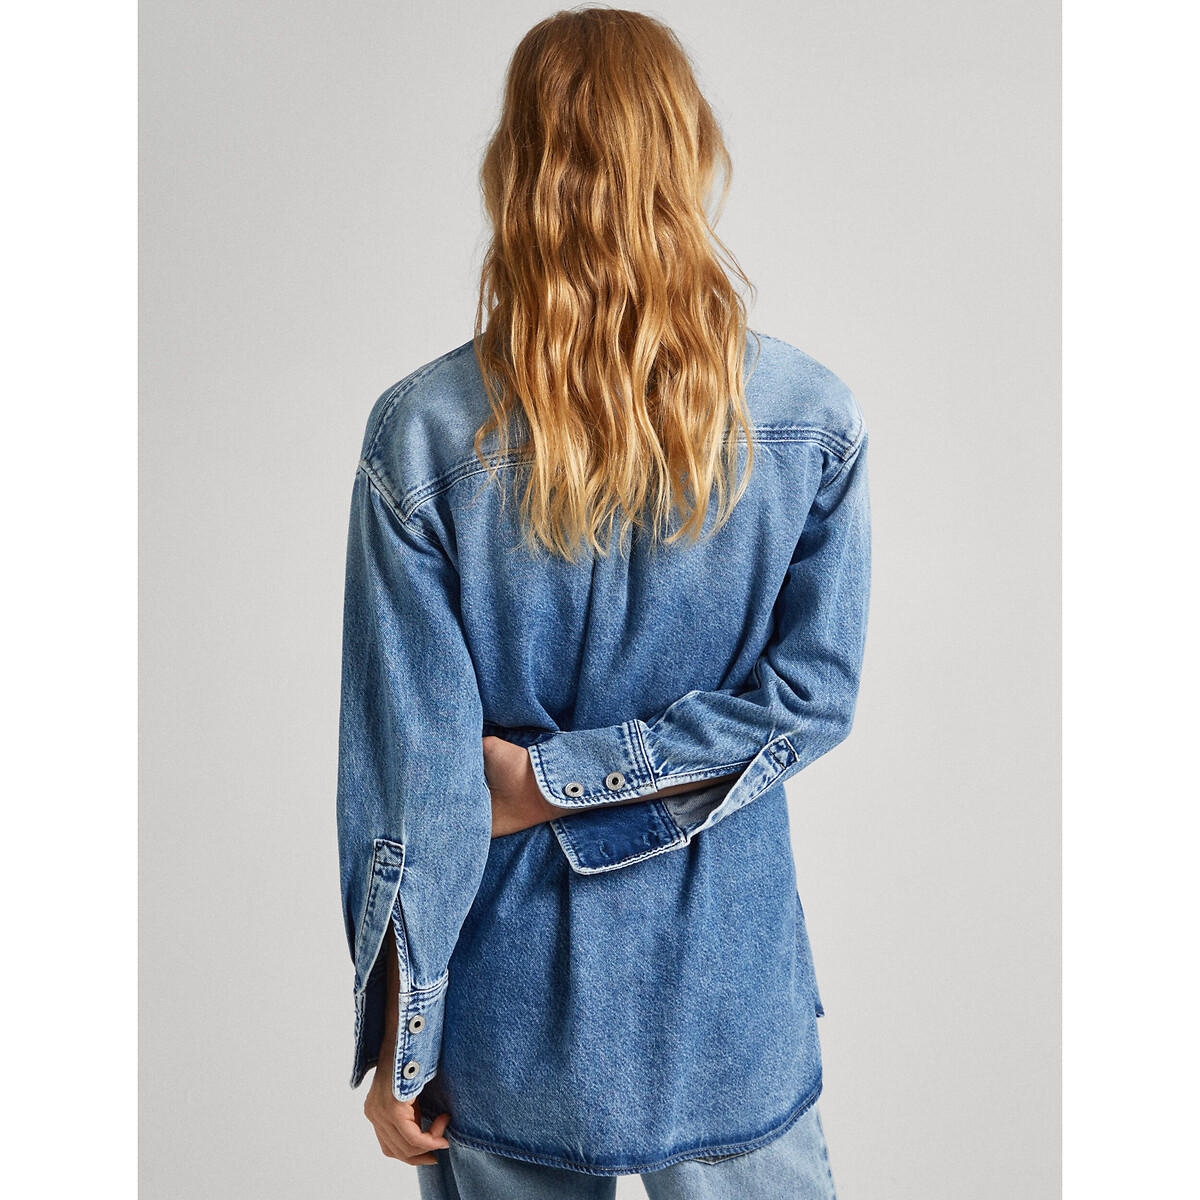 Куртка из джинсовой ткани с завязками  XS/S синий LaRedoute, размер XS/S Куртка из джинсовой ткани с завязками  XS/S синий - фото 3